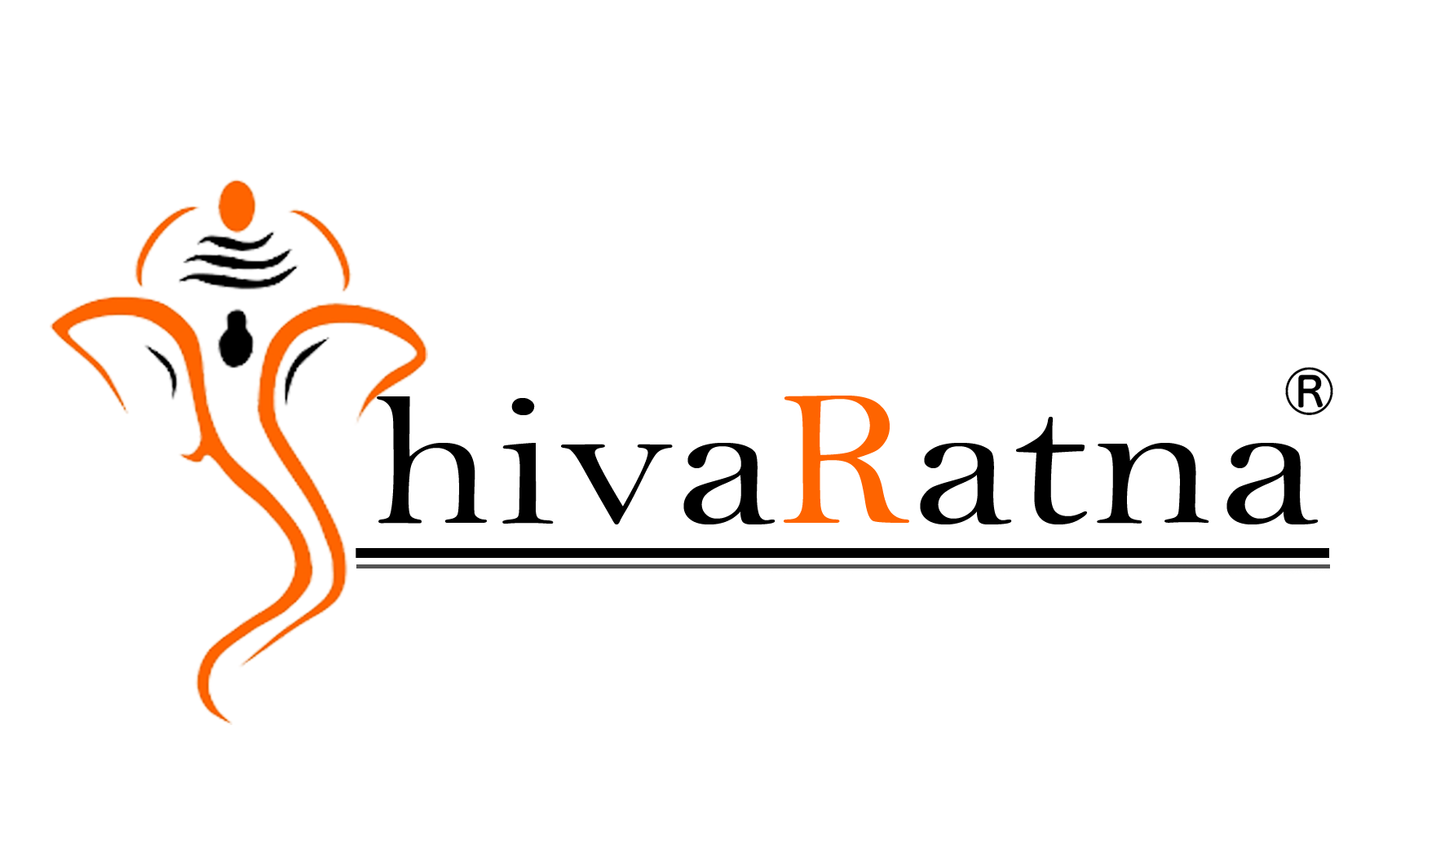 ShivaRatna 1 Mukhi Rudraksha + 5 Mukhi Rudraksha (54 Beads) Made in Pure Silver - ShivaRatna